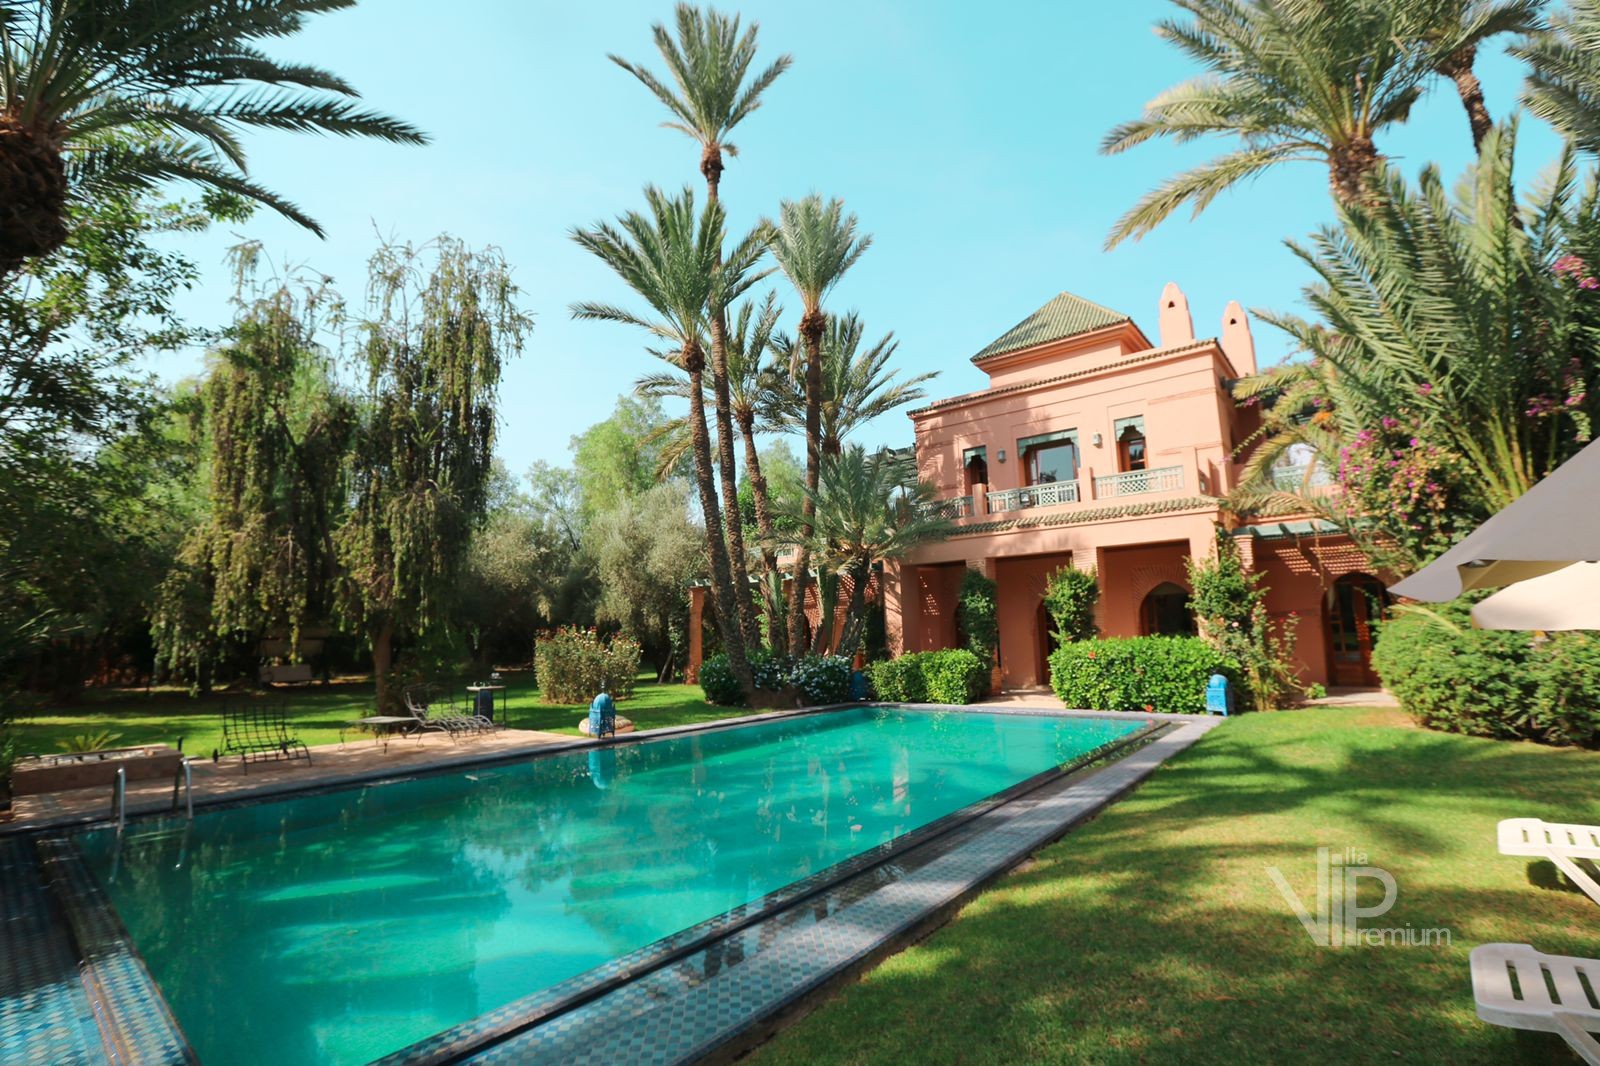 Location Villa Karima Marrakech